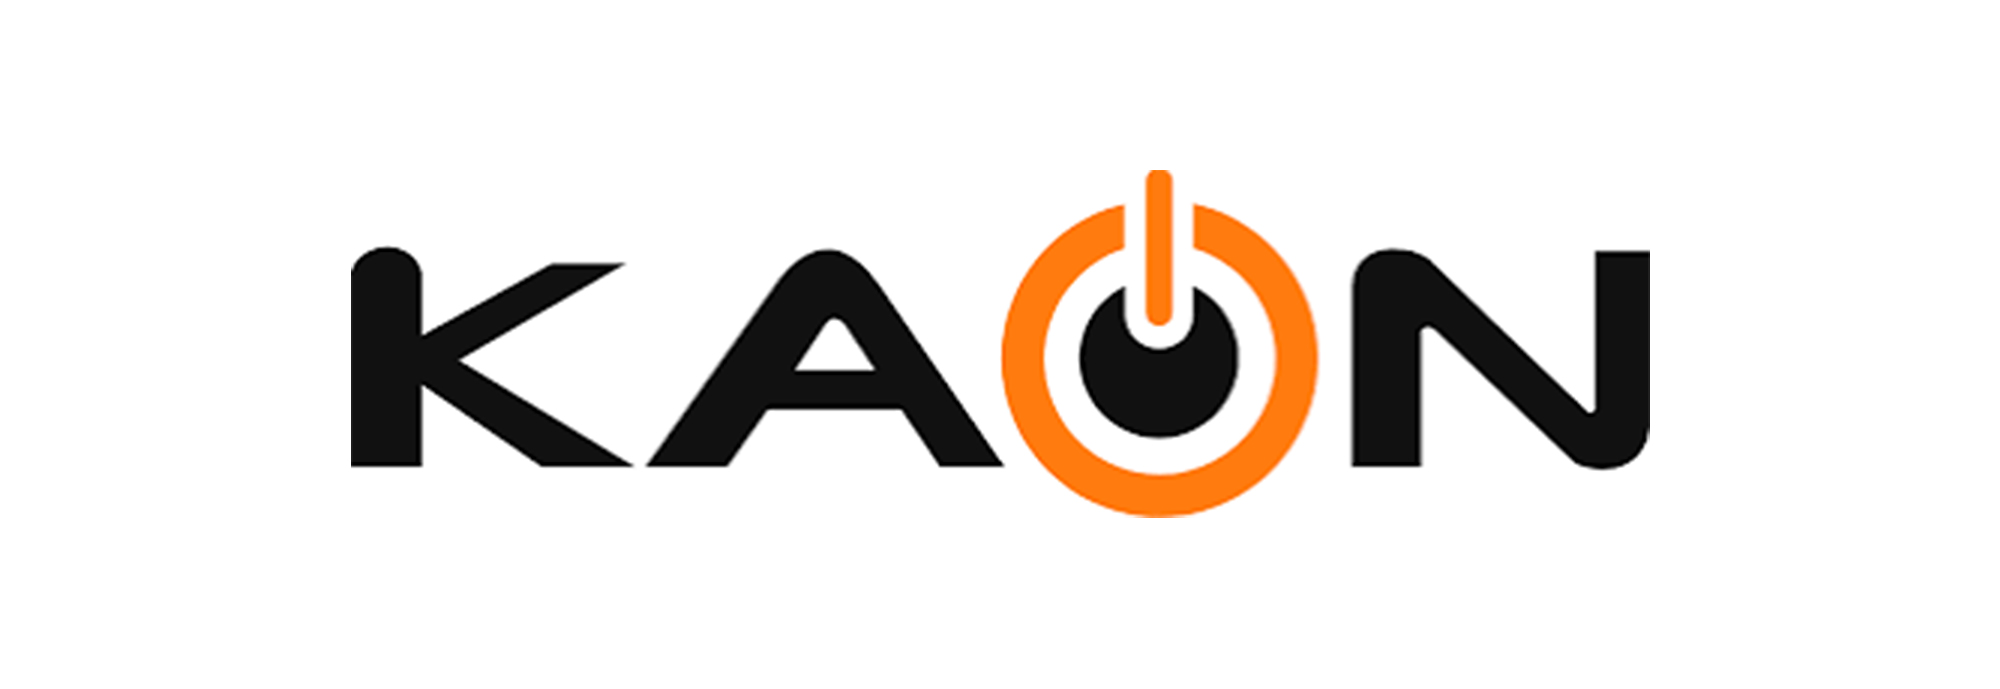 logo-kaon